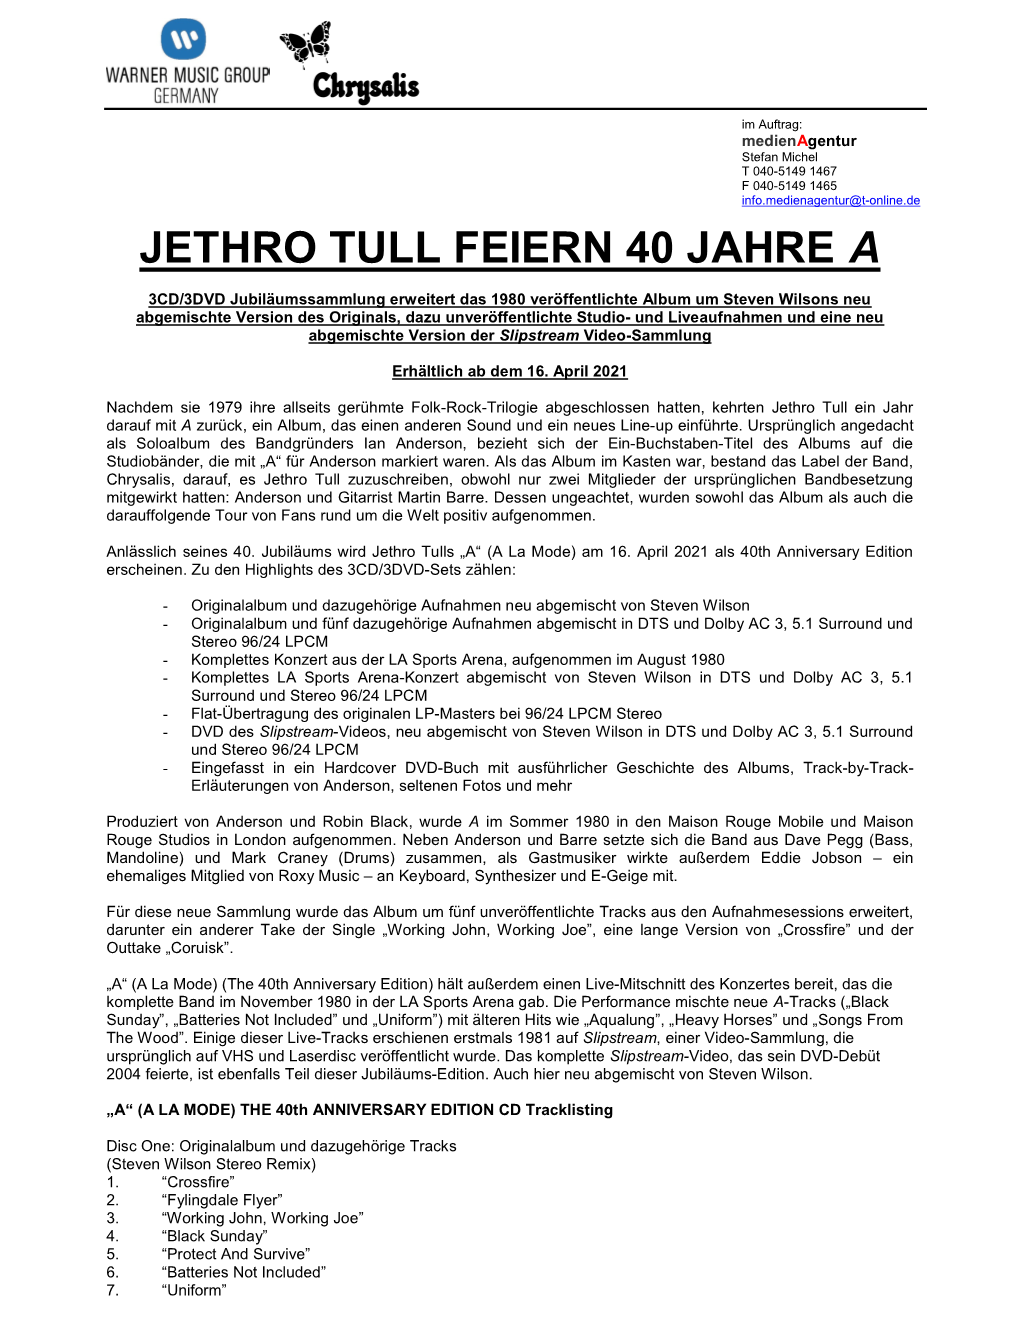 Jethro Tull Feiern 40 Jahre A